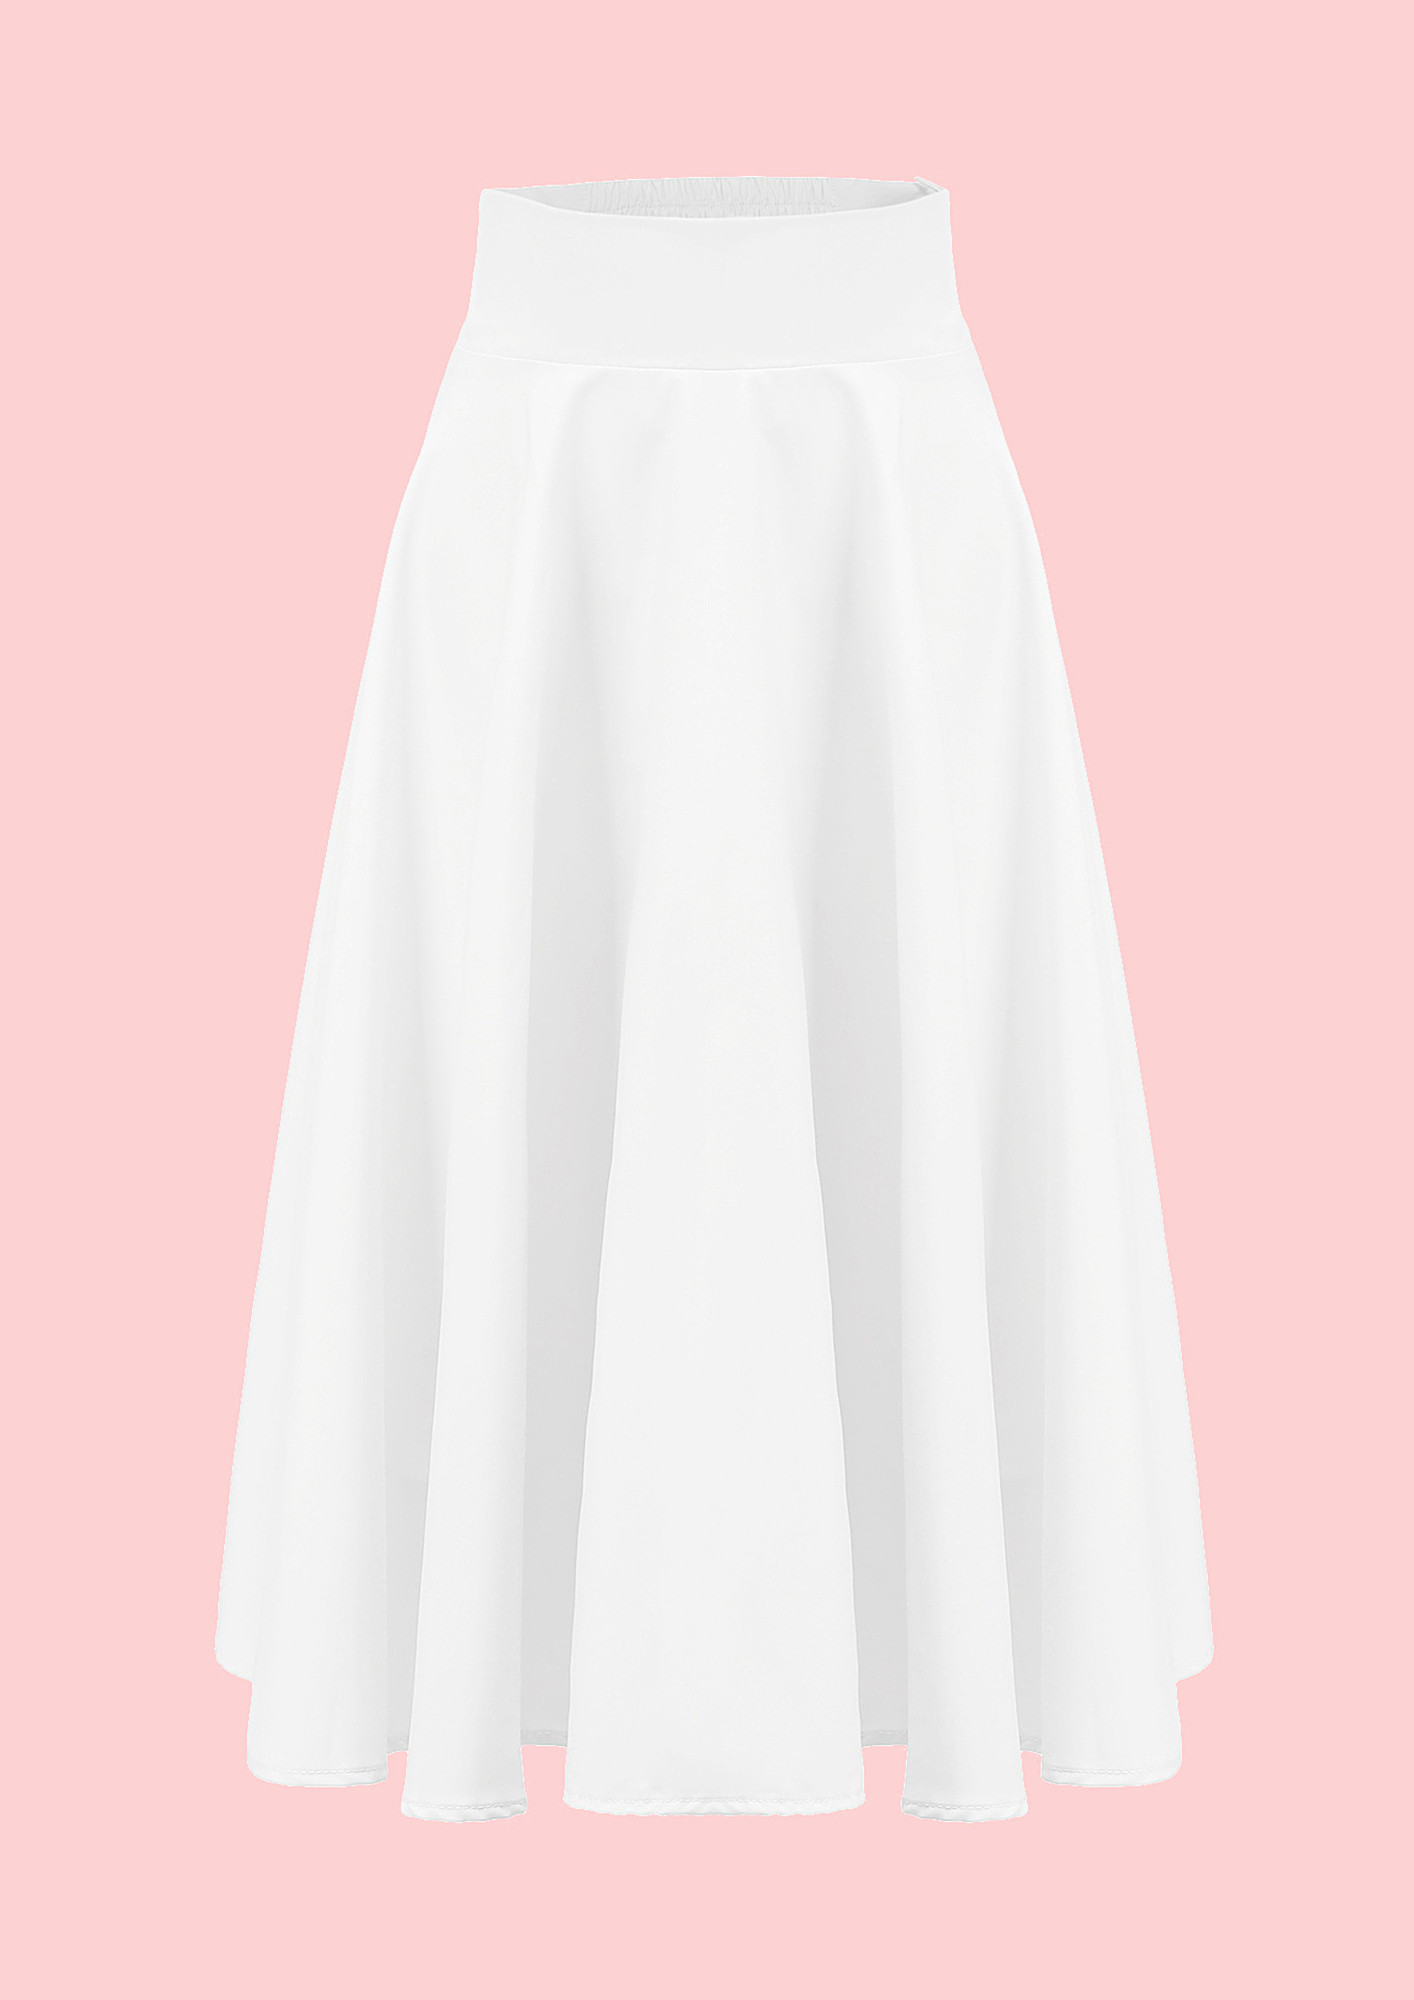 Boden Skirt 22 Short Stripped Aline Skirt-WG577-ST | eBay-vdbnhatranghotel.vn